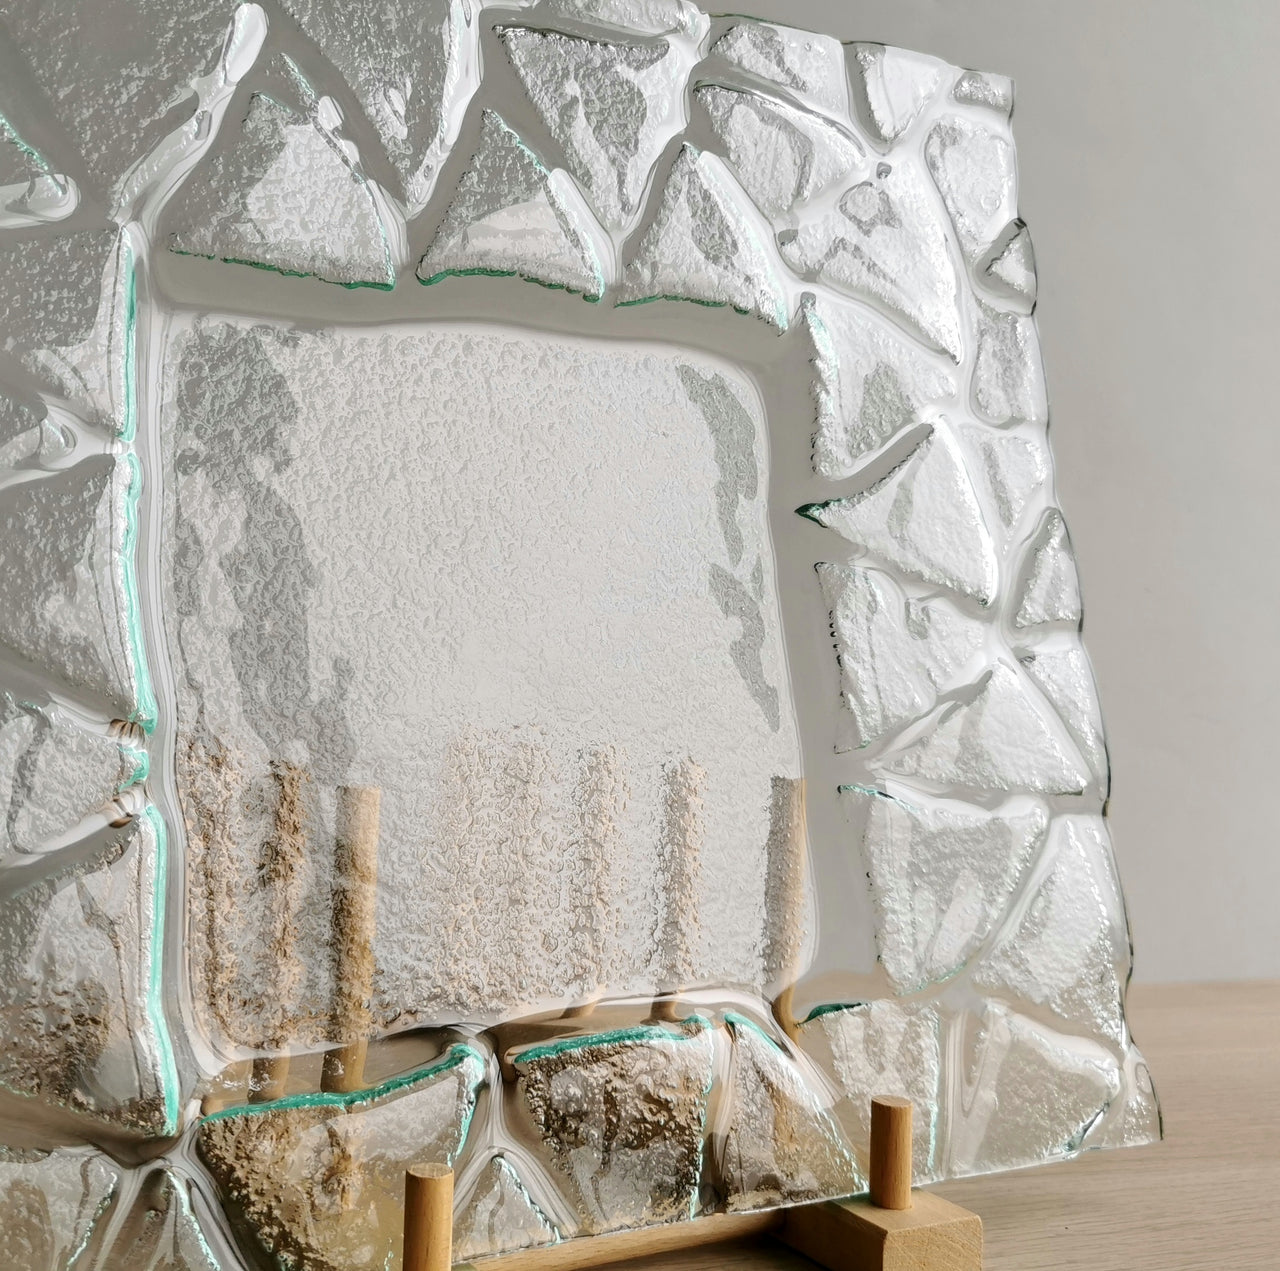 Minimalist Transparent Fused Glass Triad Platter. Artistic Clear Glass Platter - 12"x12" (30,5cm.x30,5cm.)